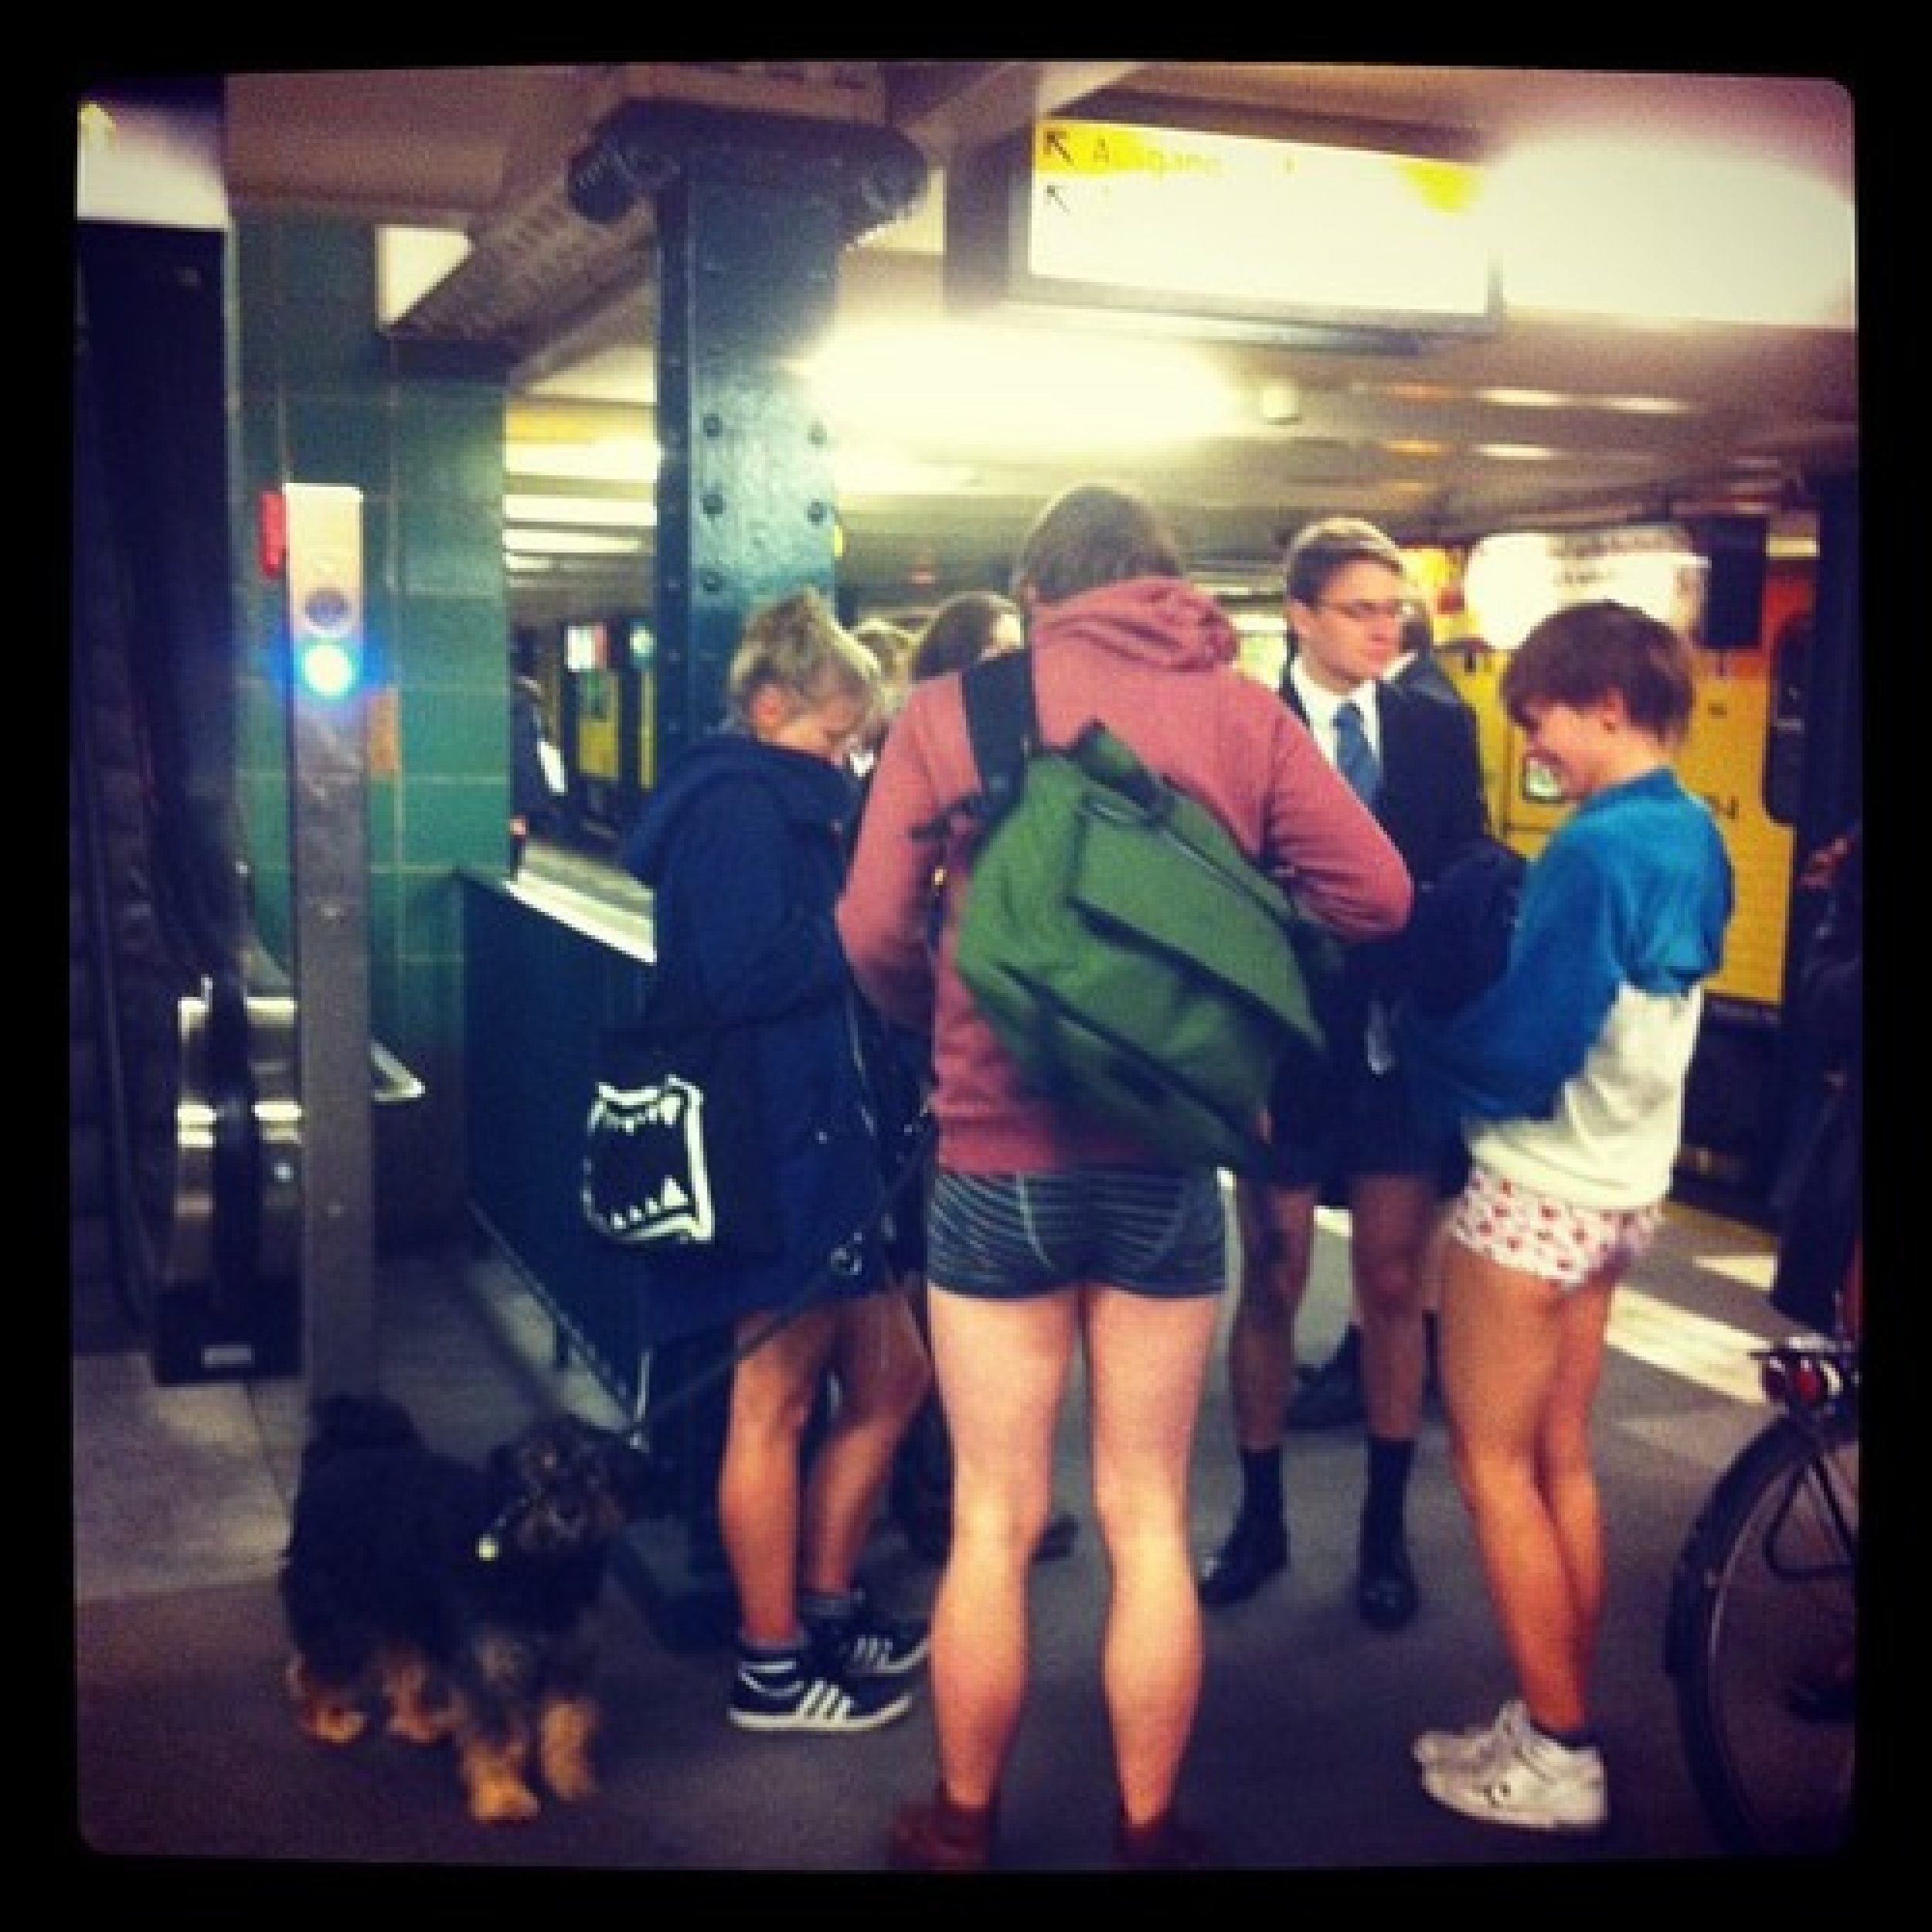 No Pants Subway Ride Berlin, Germany